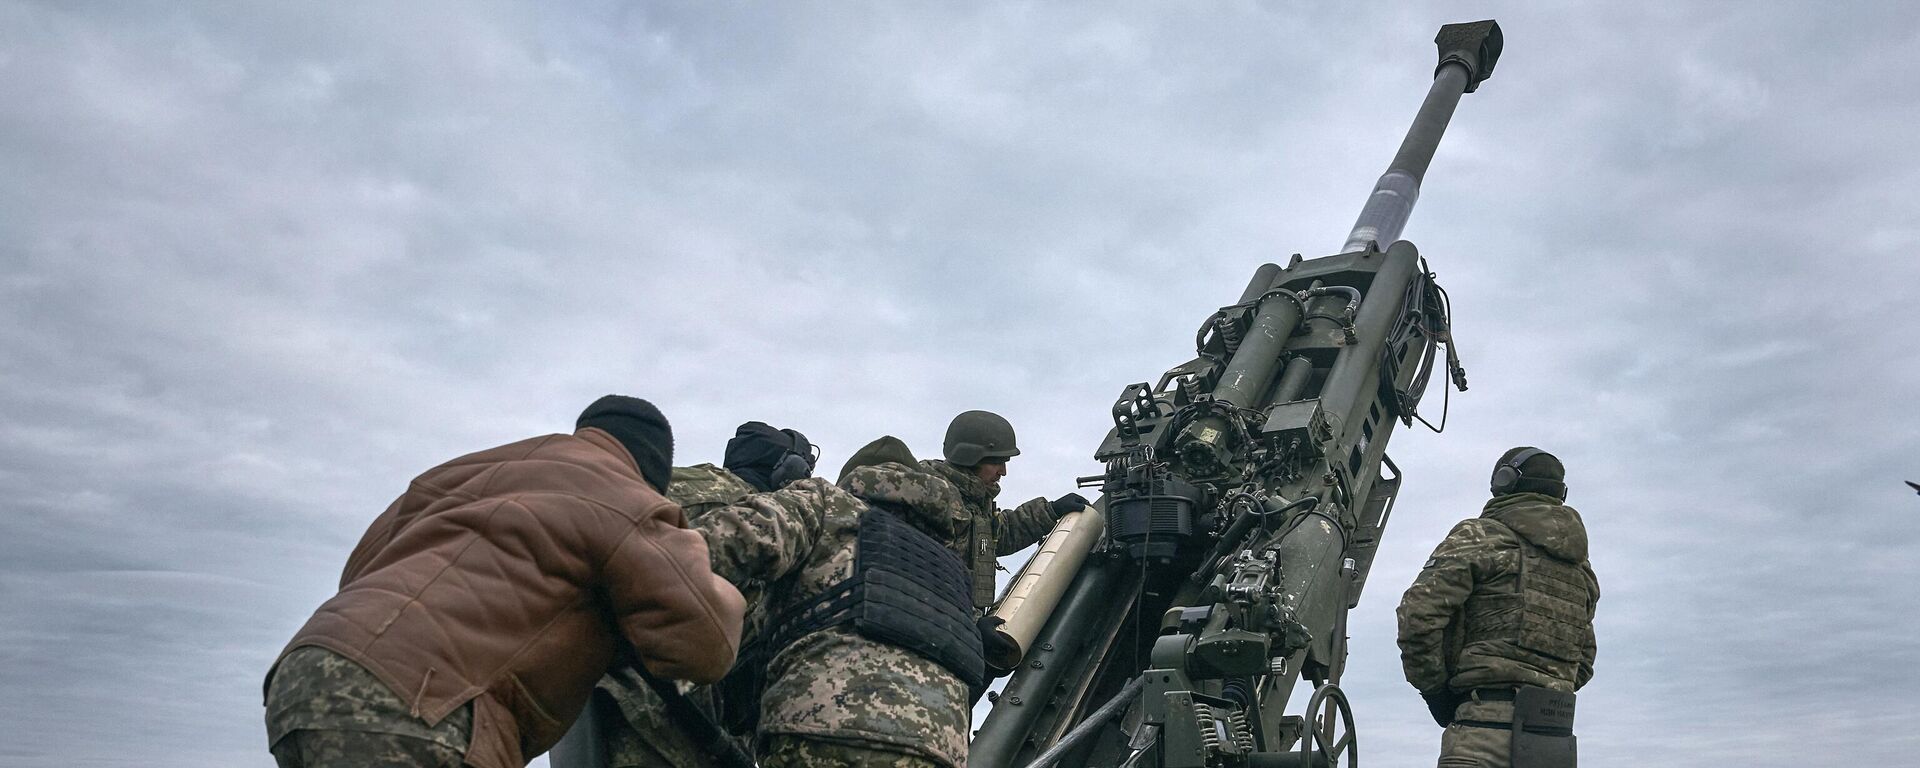 Militares ucranianos operan un sistema de artillería estadounidense M777 en la región de Jersón el 9 de enero de 2023 - Sputnik Mundo, 1920, 14.05.2023